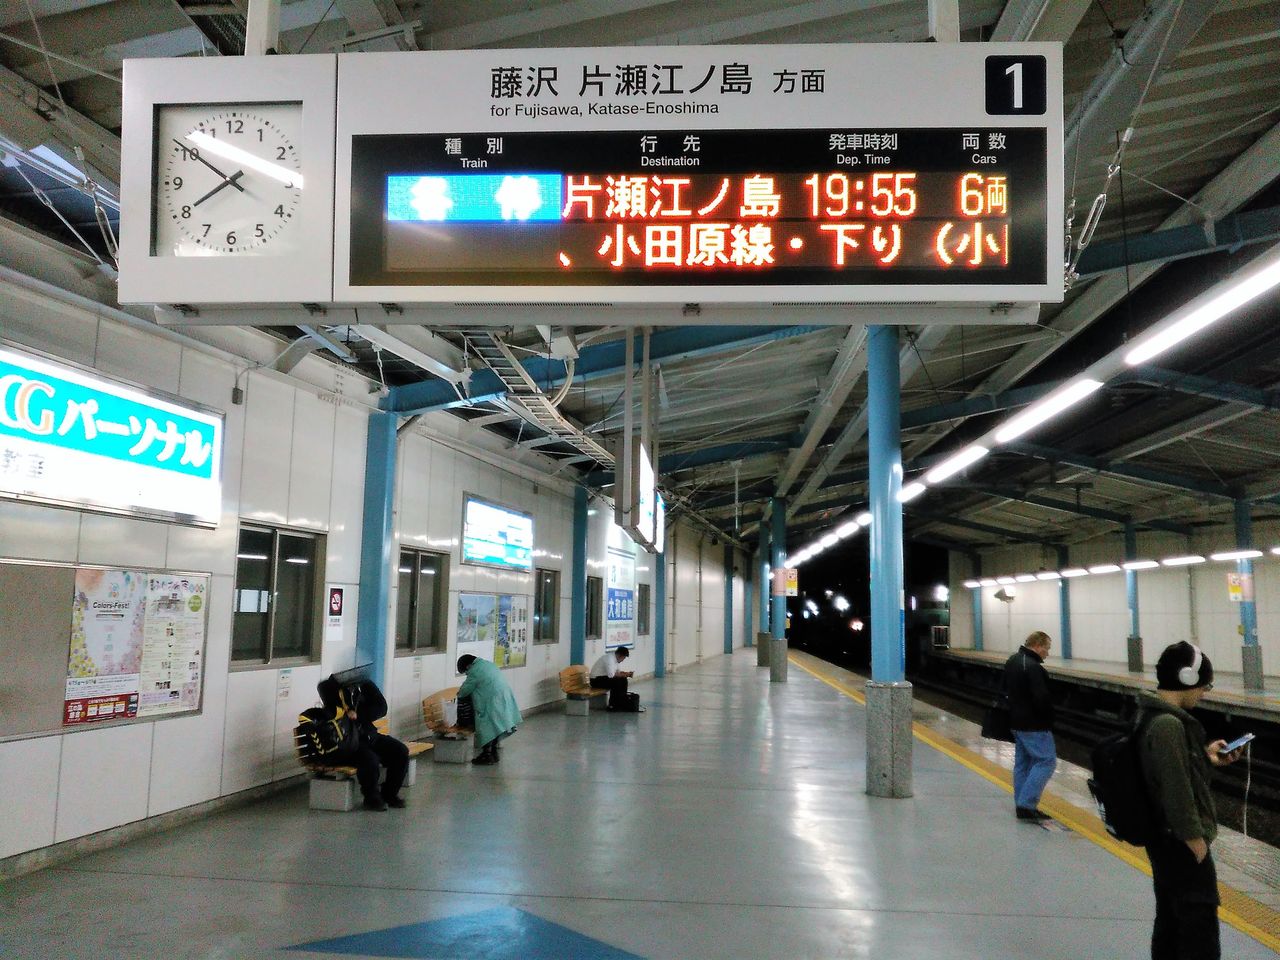 小田急線 その3 夕ラッシュ時 代々木上原から湘南台まで乗車体験 通勤ライナーを抜本的拡充して 圧倒的多くの乗客に快適通勤を